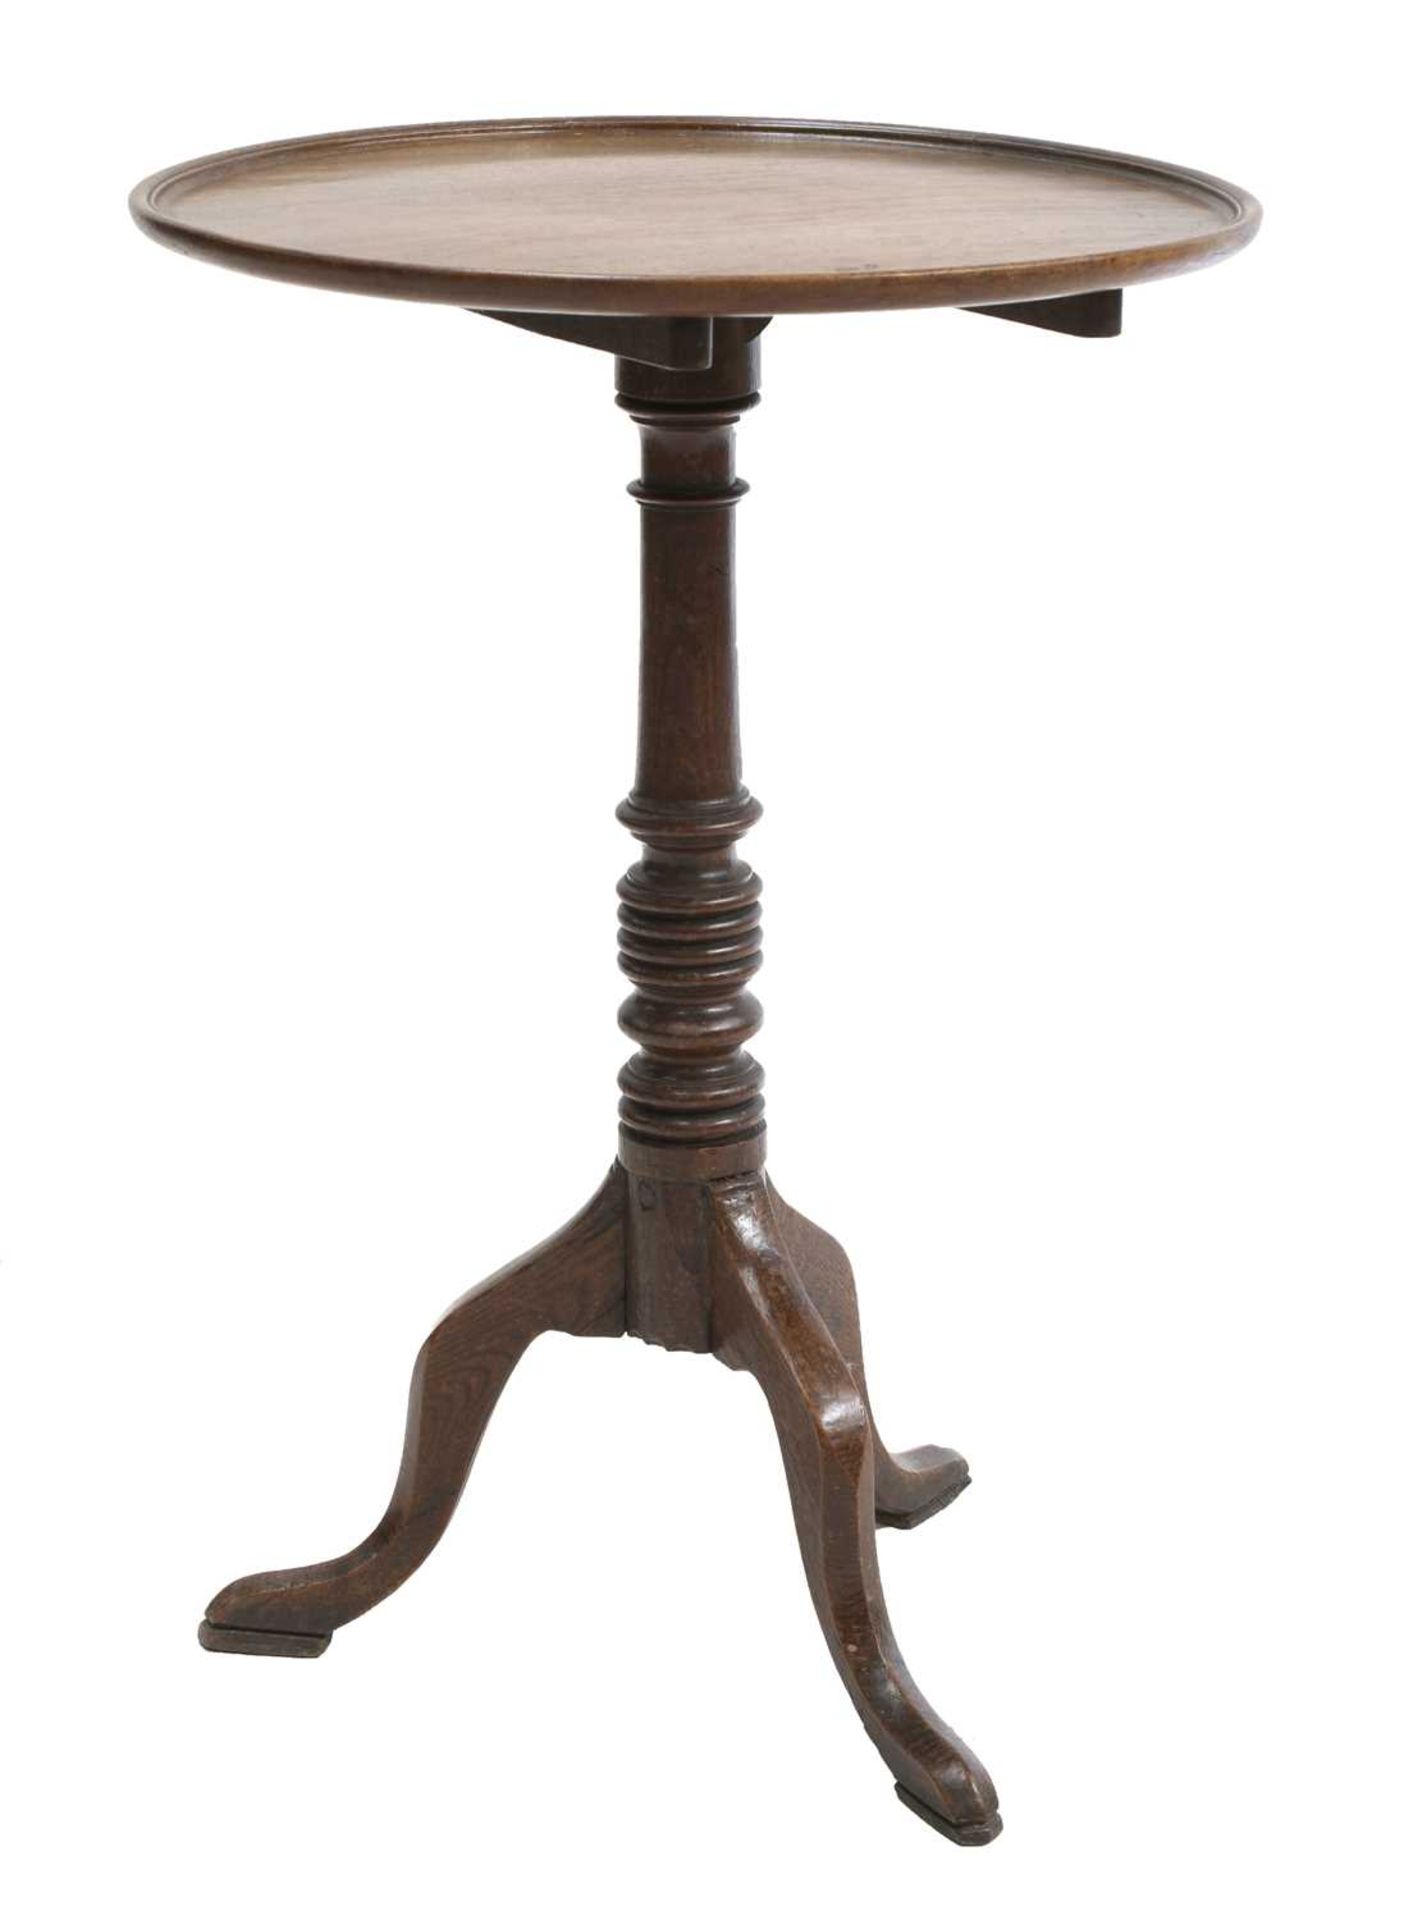 An oak and mahogany circular table,